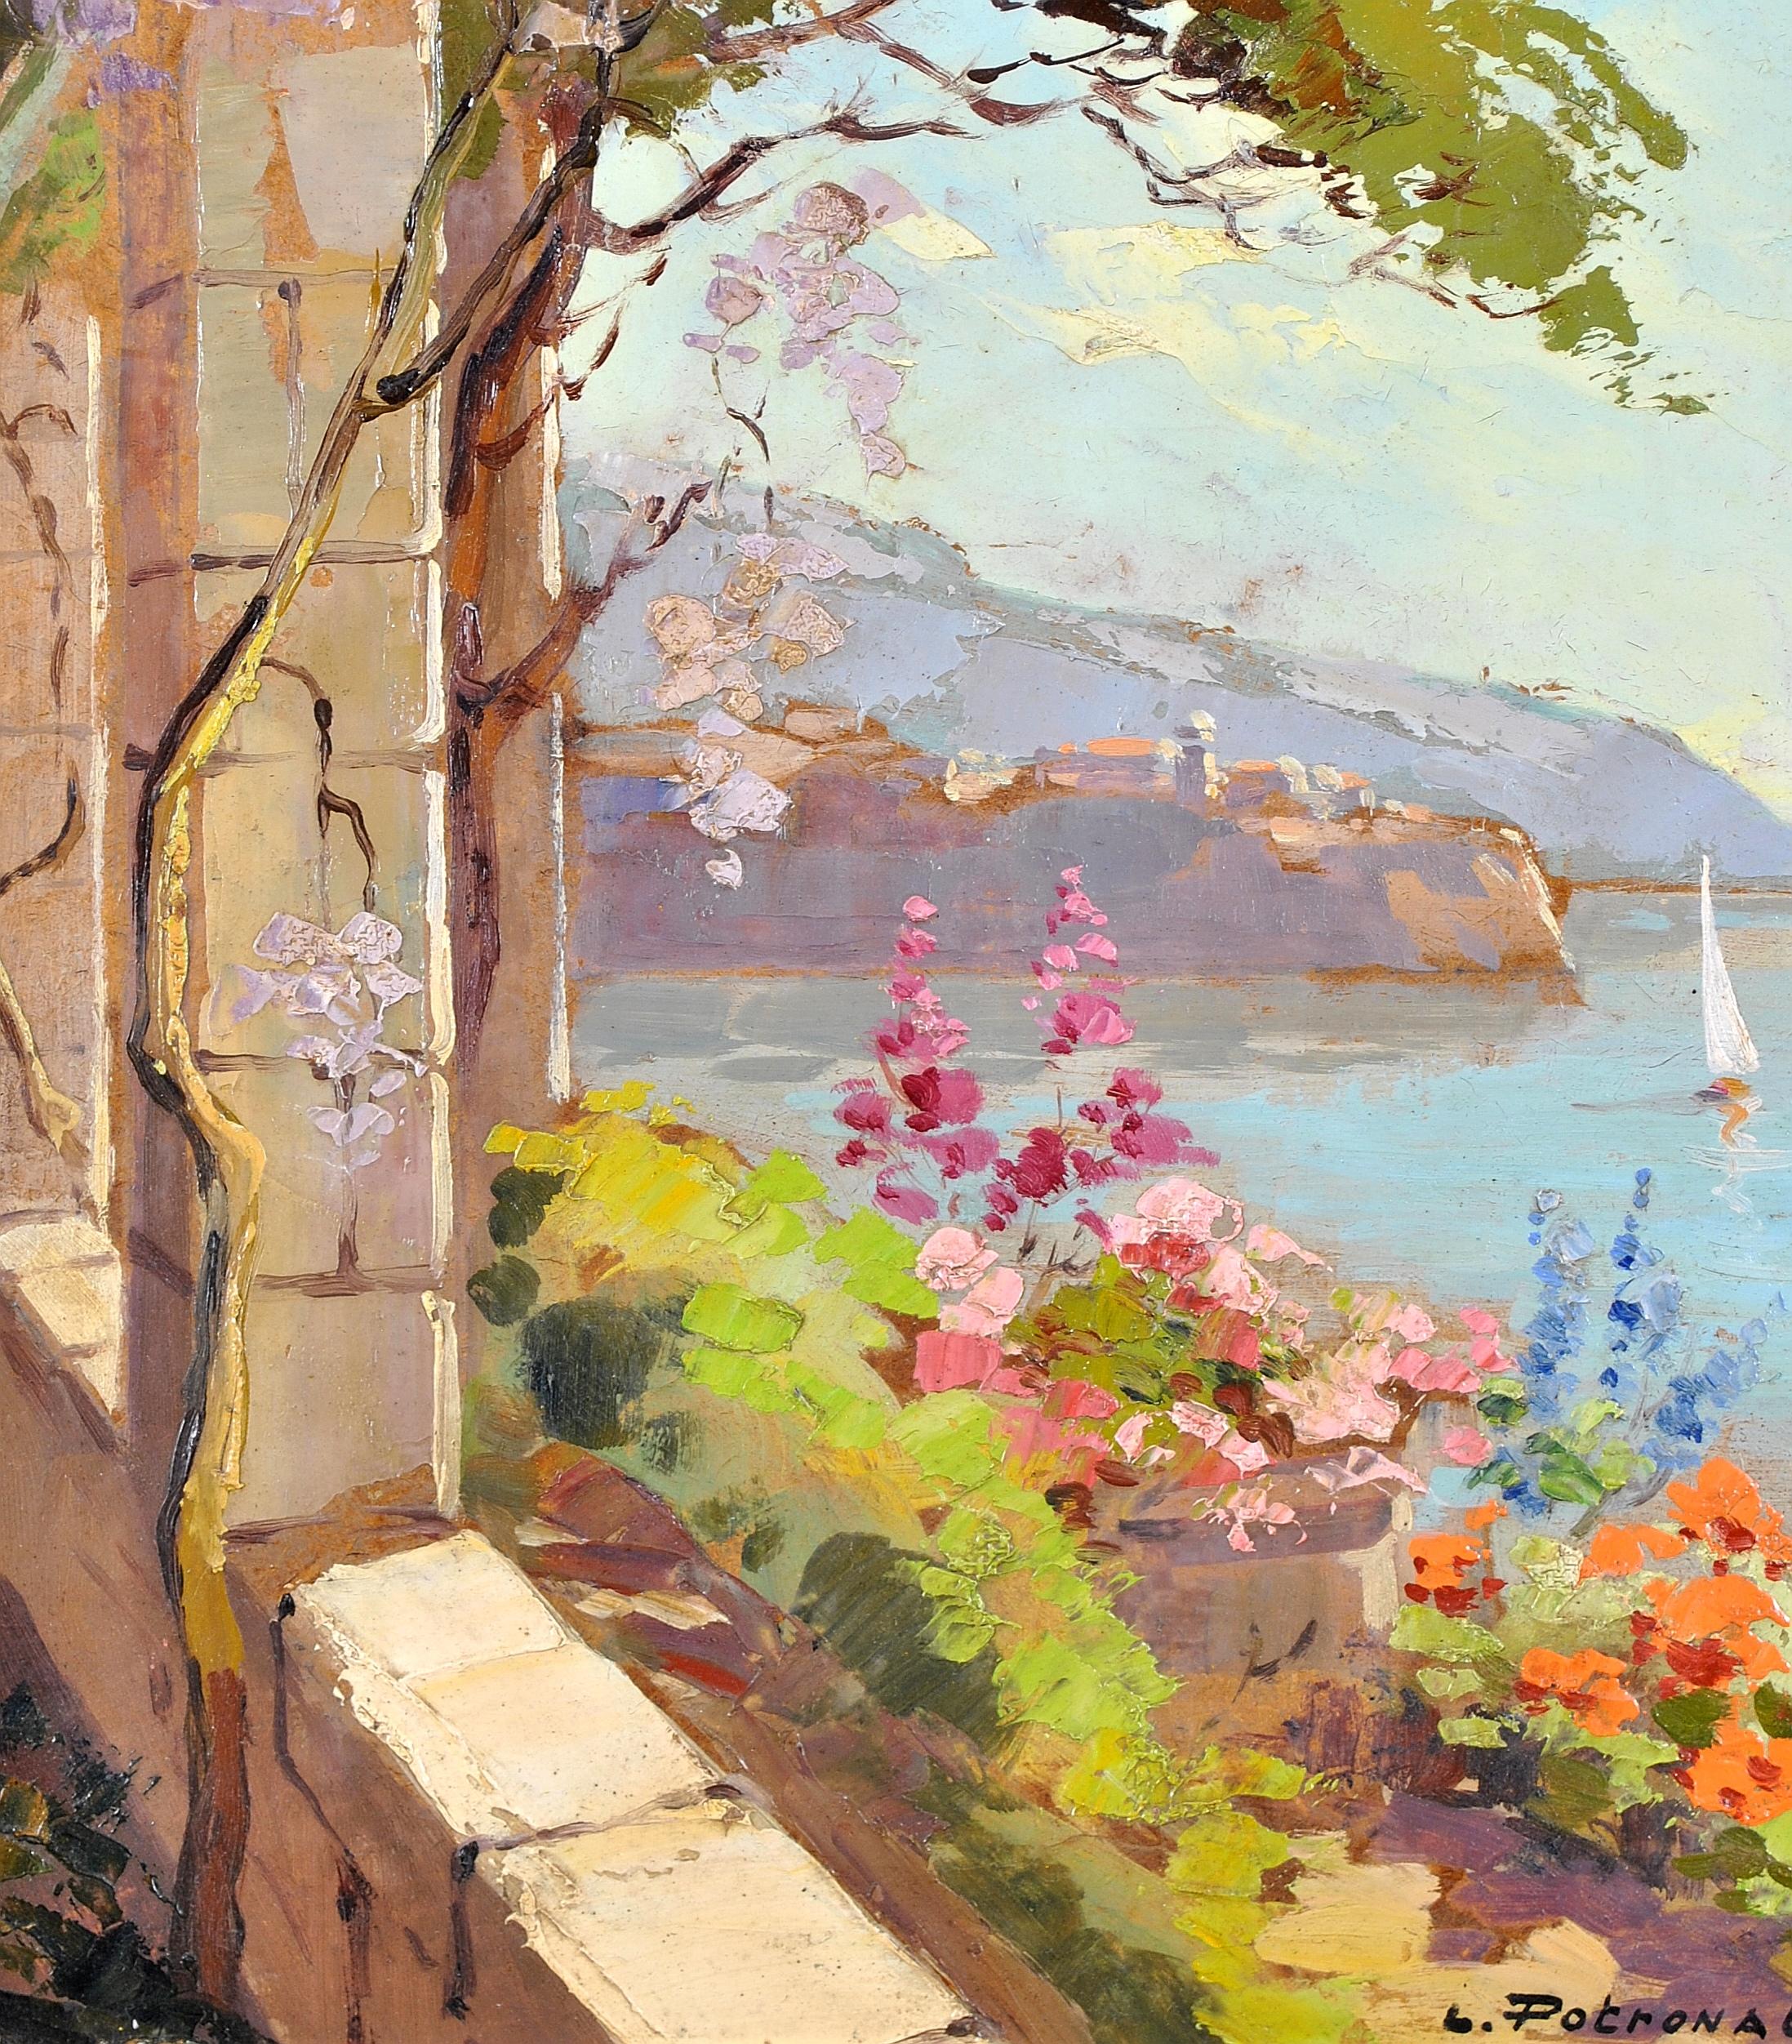 Cote d'Azur – Französische Riviera von Balcony, impressionistisches Ölgemälde (Impressionismus), Painting, von Lucien Potronat